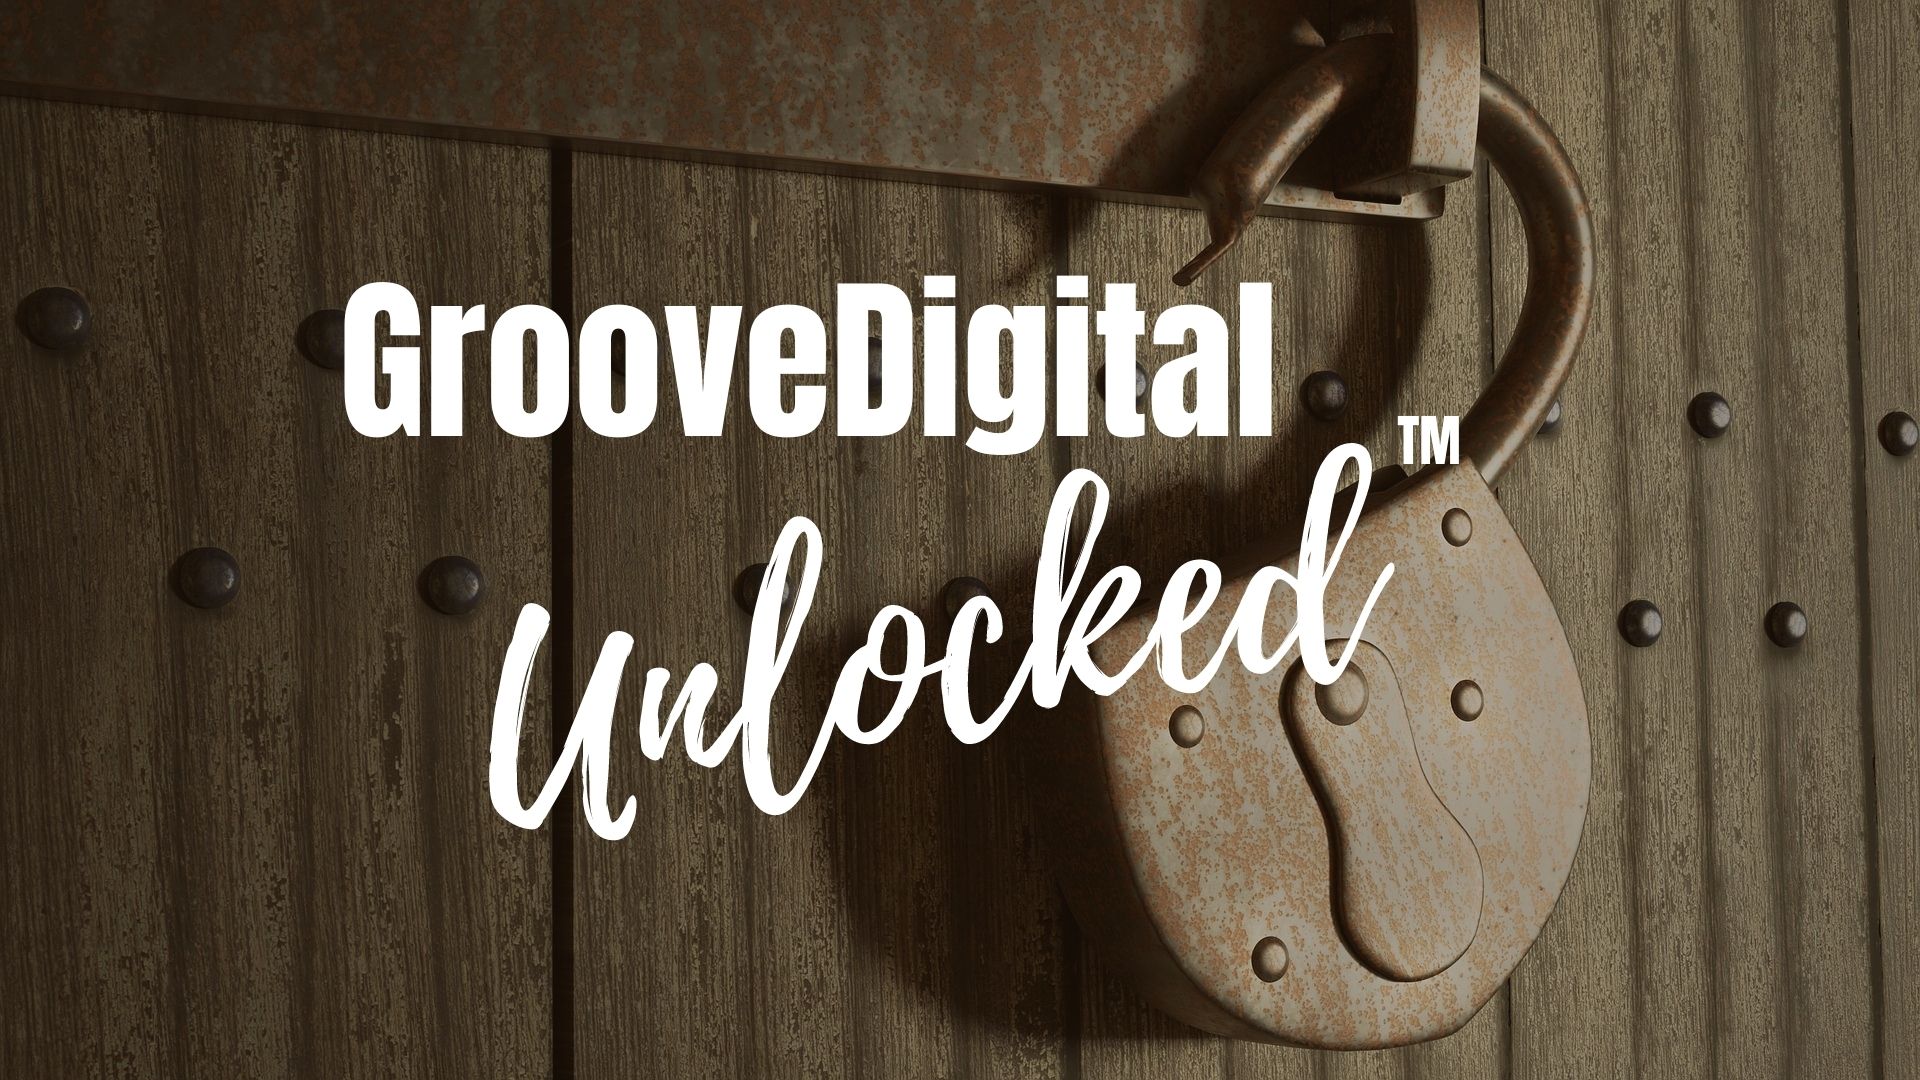 GrooveDigital Unlocked